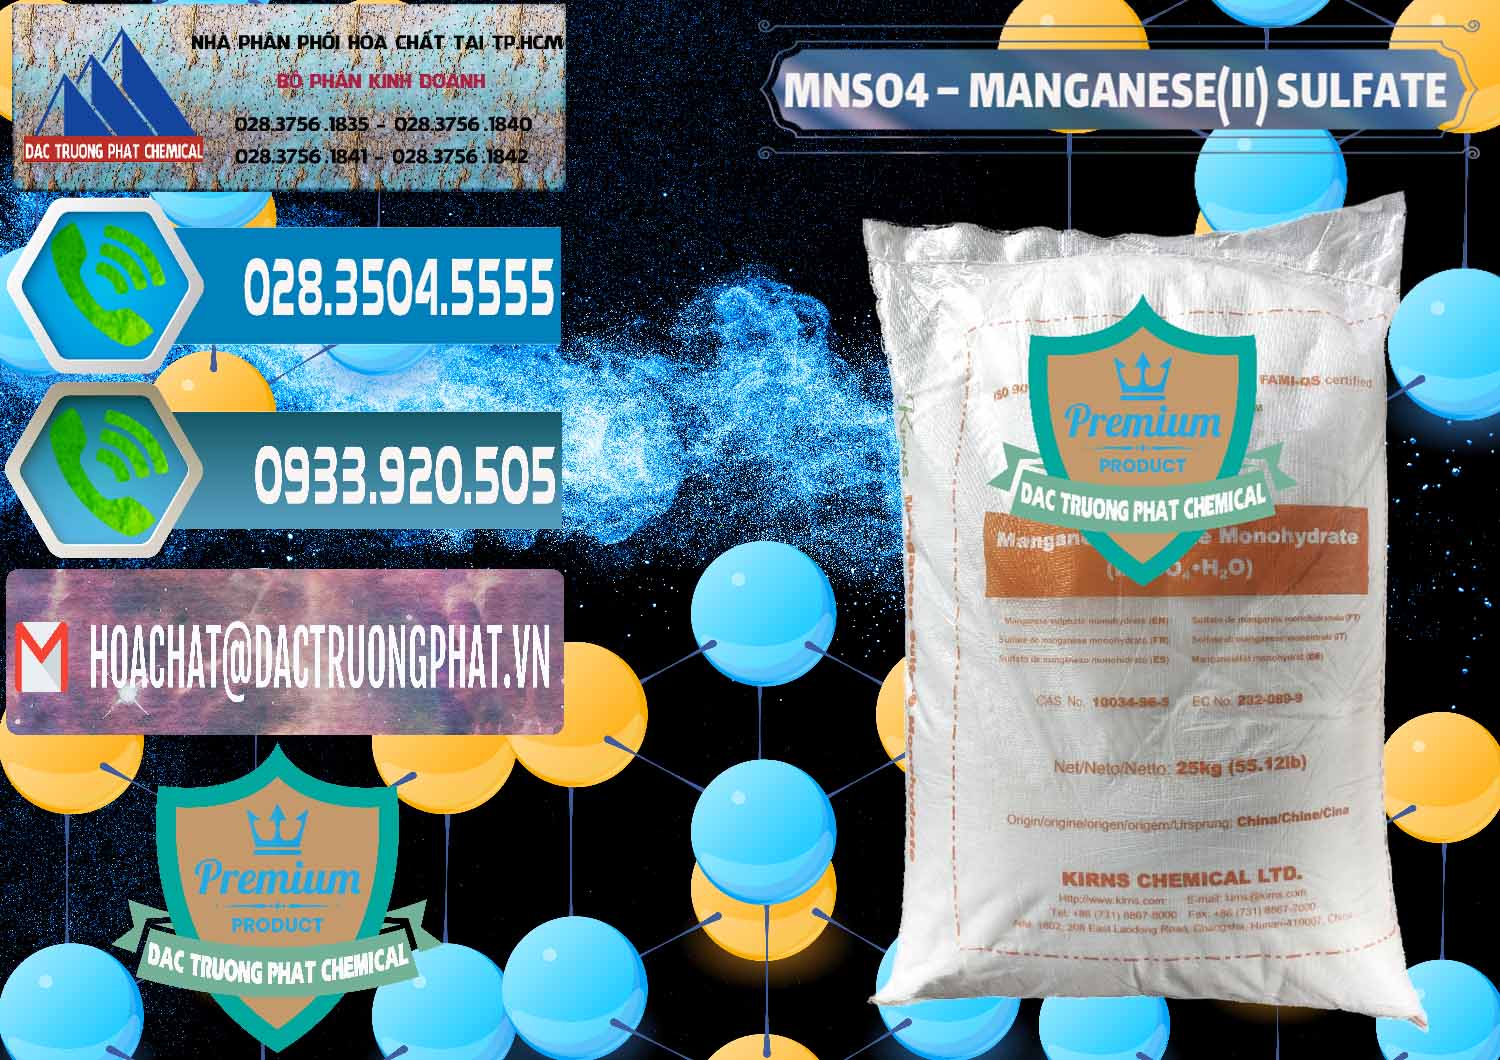 Nhà cung cấp & bán MNSO4 – Manganese (II) Sulfate Kirns Trung Quốc China - 0095 - Công ty chuyên phân phối ( bán ) hóa chất tại TP.HCM - congtyhoachat.net